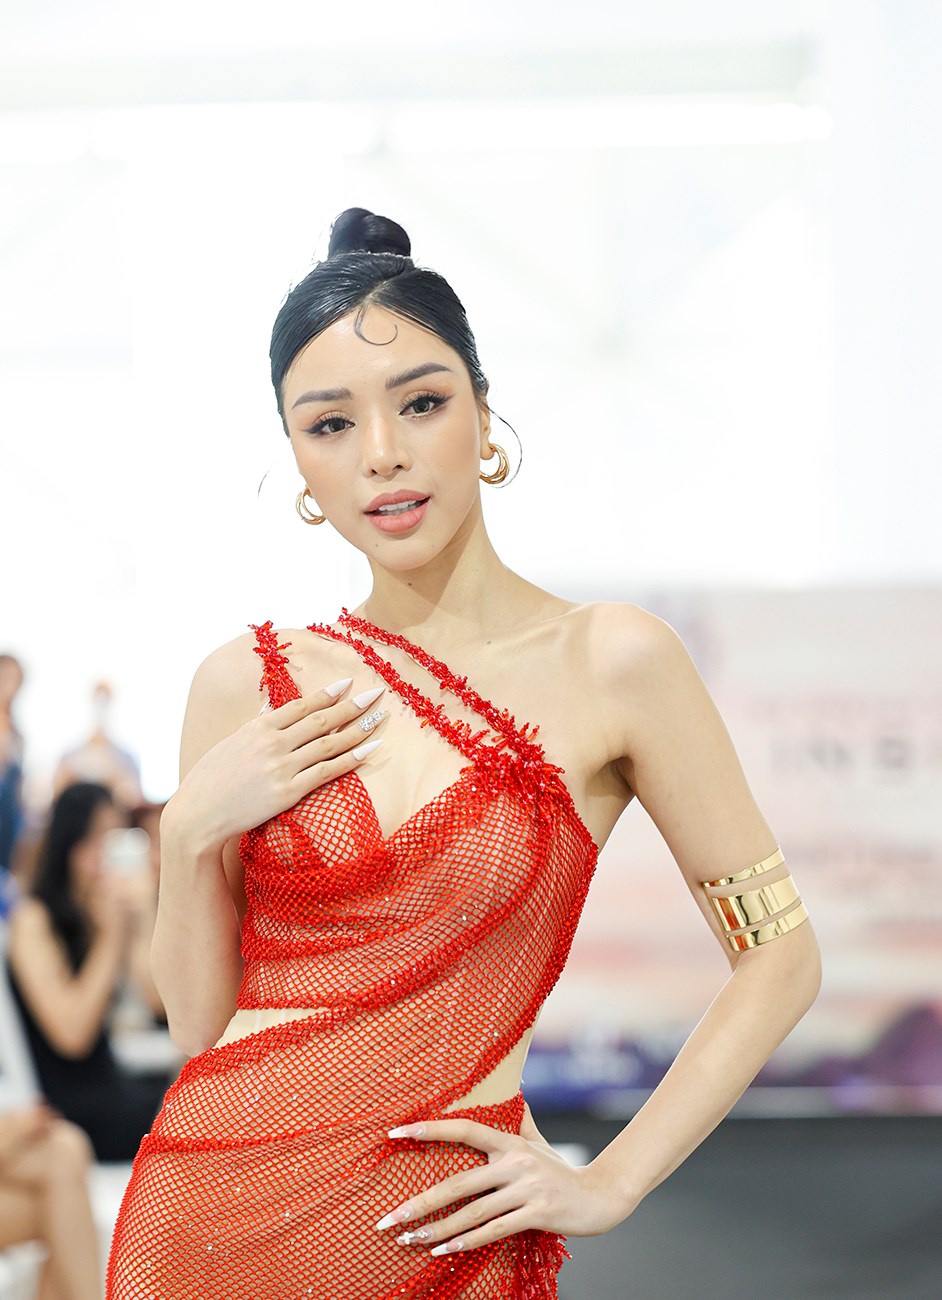 Siêu mẫu Quốc tế 2018 Khả Trang khoe dáng nóng bỏng khi ngồi ghế giám khảo  - ảnh 2